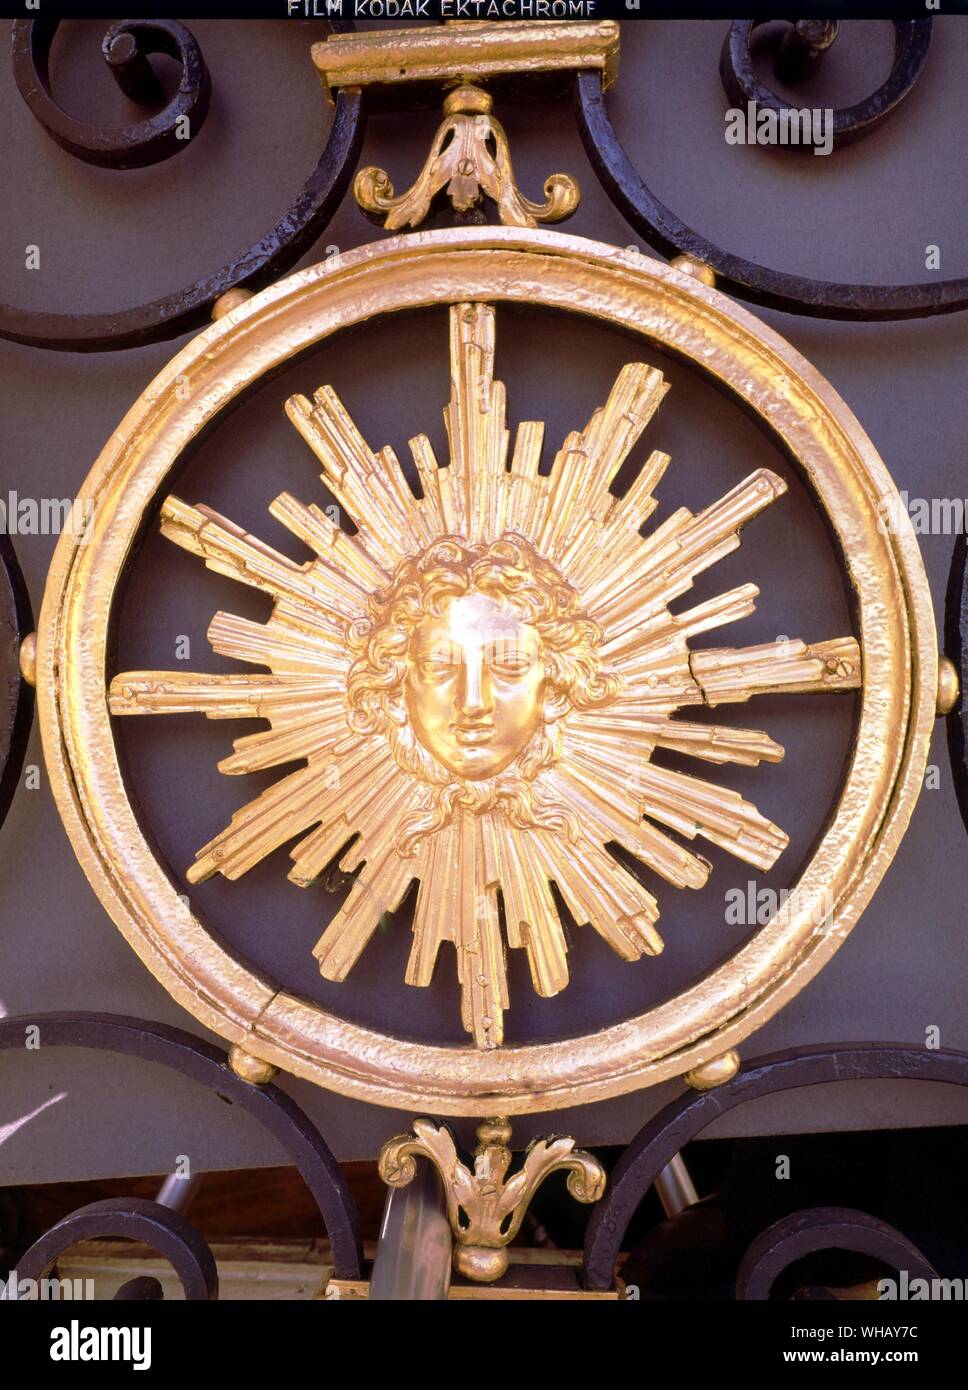 Der Sonnenkönig, Wappen, von einem Balkon in der Place Vendome, Paris. Kunstvoll mit einem Emblem von Louis XIV eingerichtet Der Sonnenkönig von Nancy Mitford, zurück. . Stockfoto